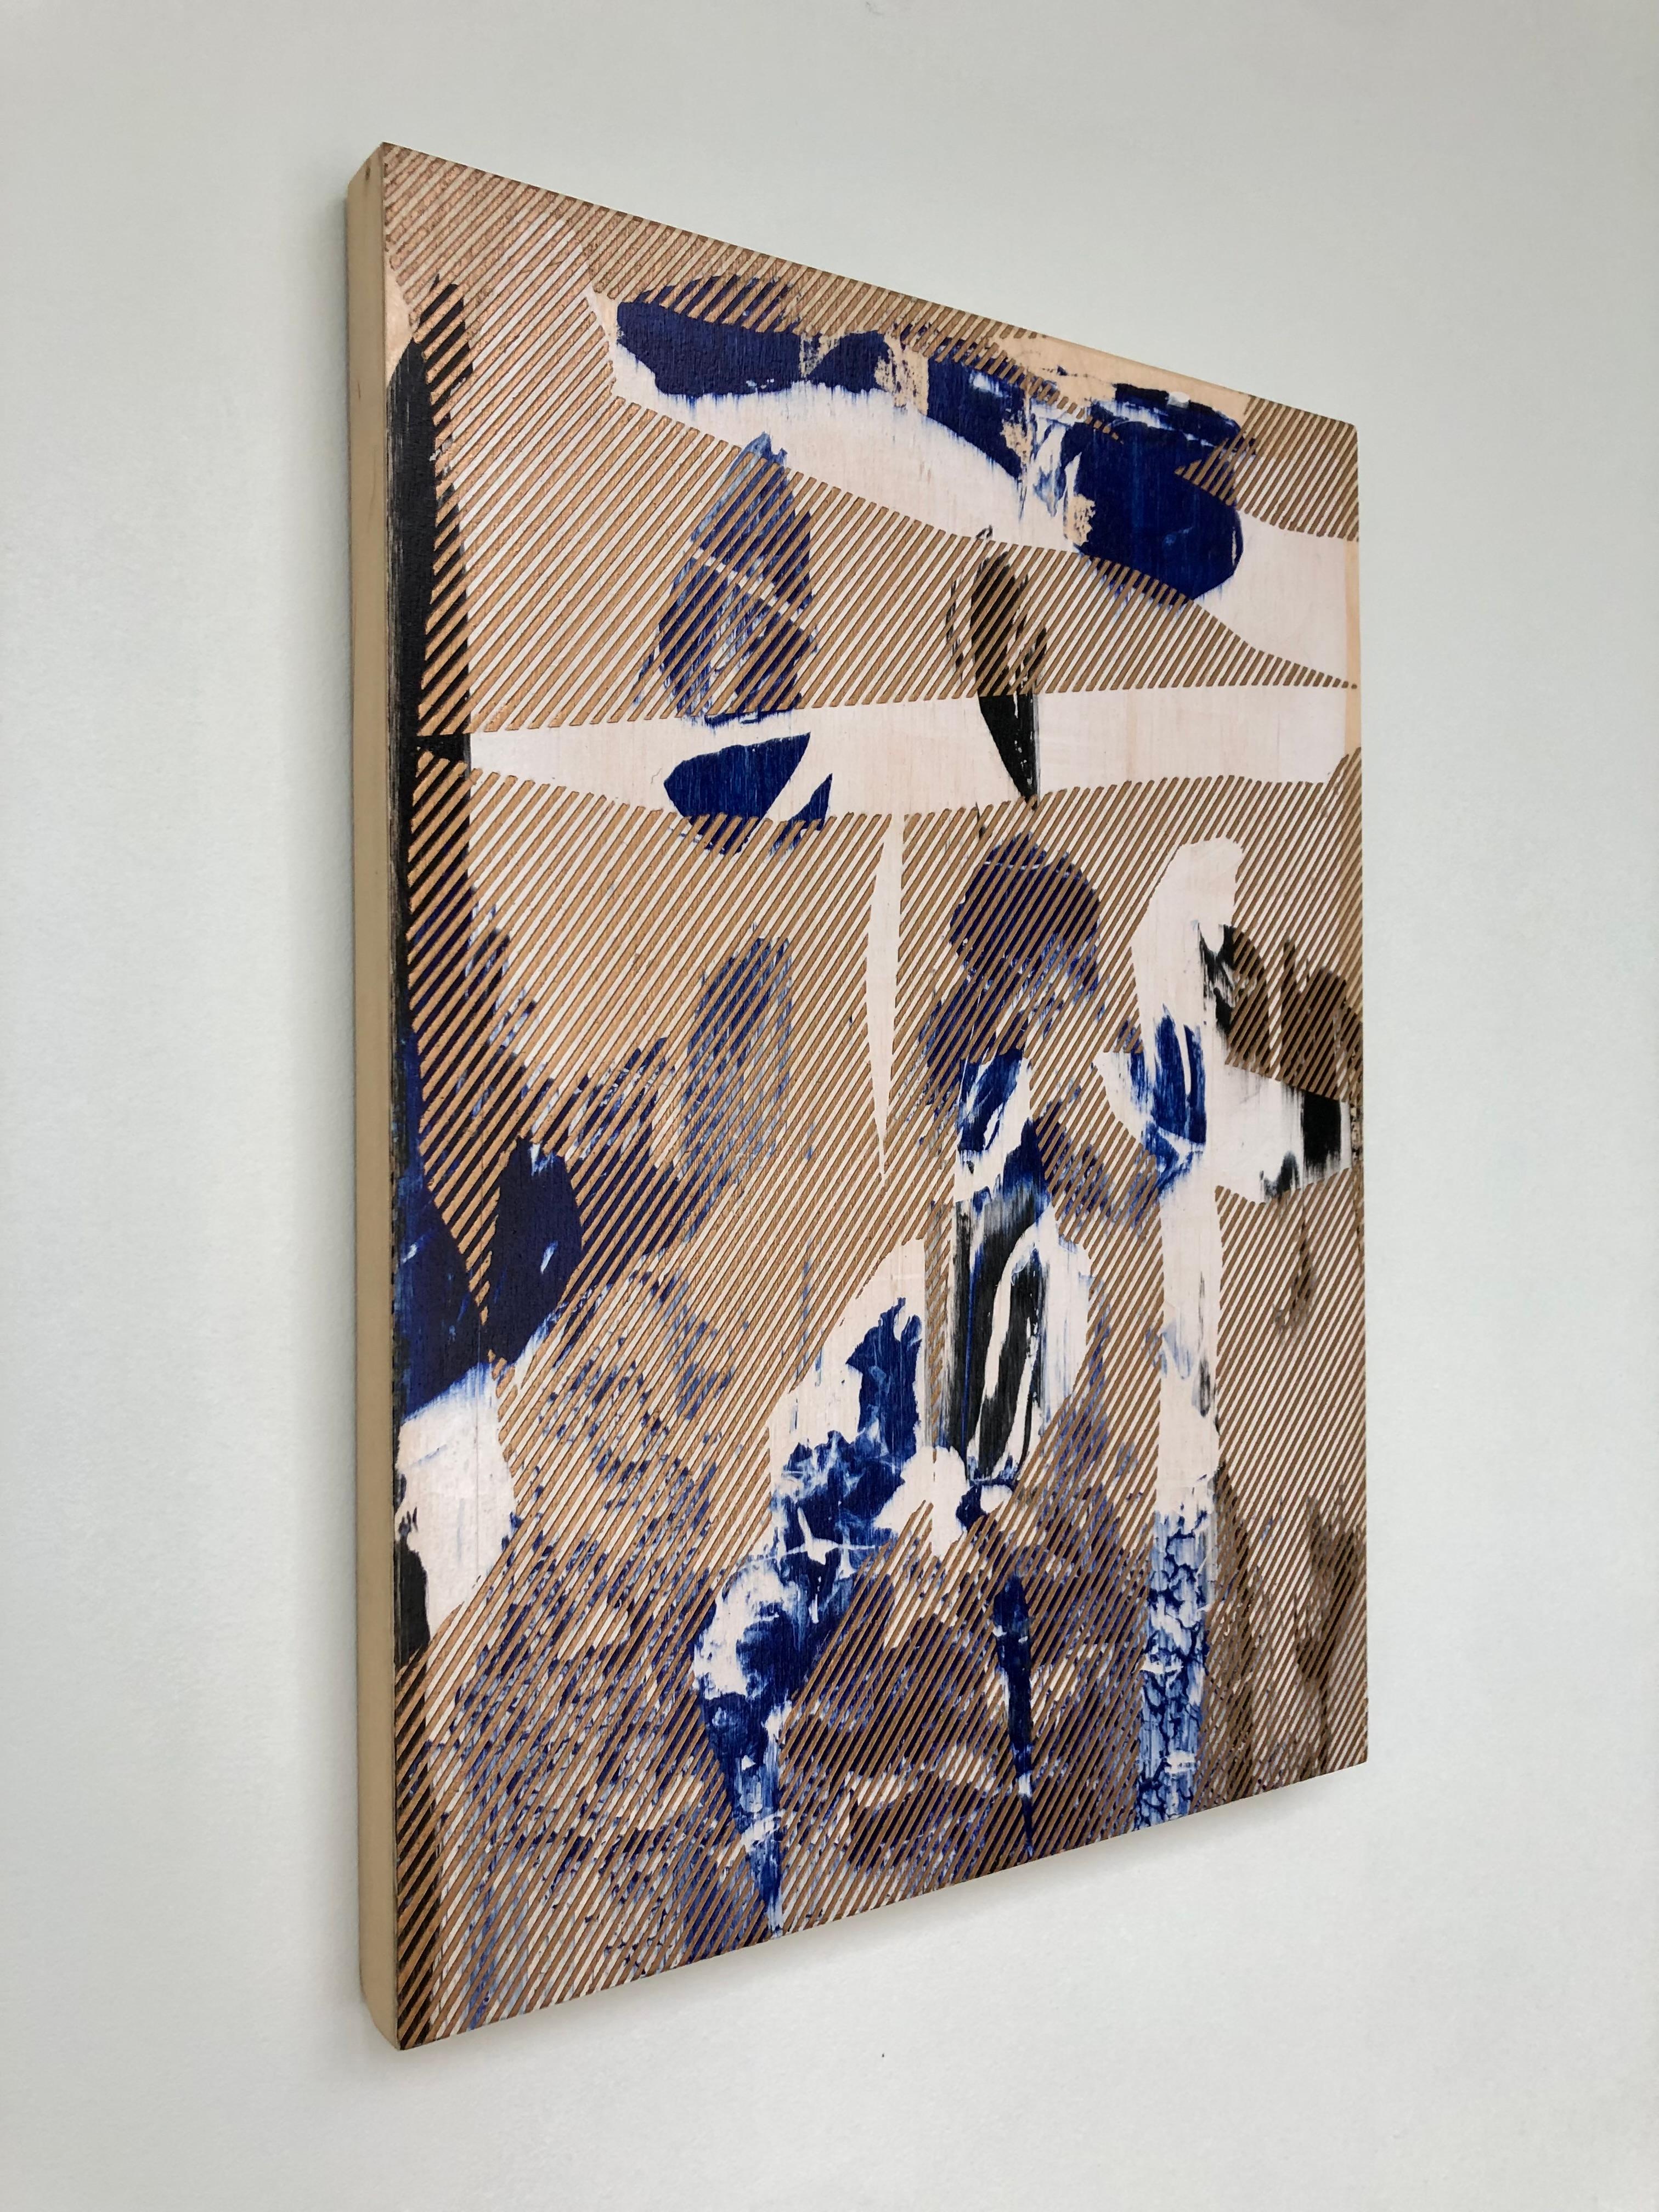 Mangata 28 (peinture à petite échelle à grille dorée en bois abstrait op art contemporain) - Painting de Melisa Taylor Metzger